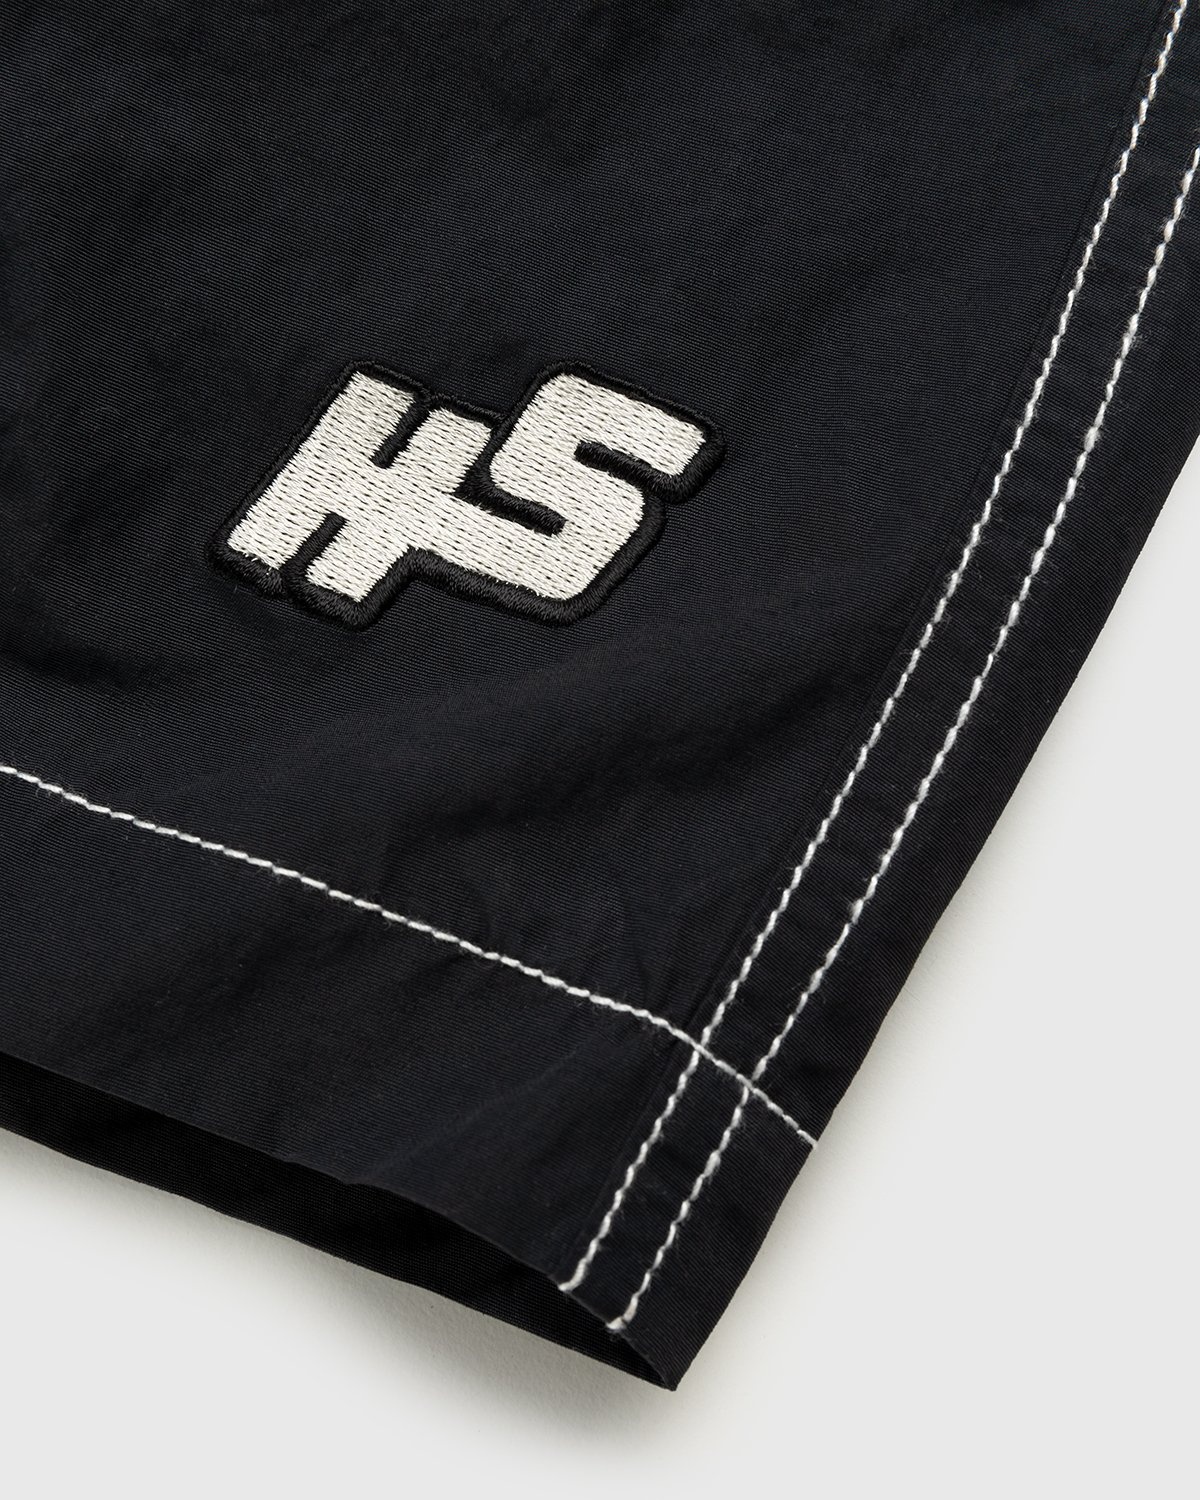 Highsnobiety – Contrast Brushed Nylon Water Shorts Black - Shorts - Black - Image 5